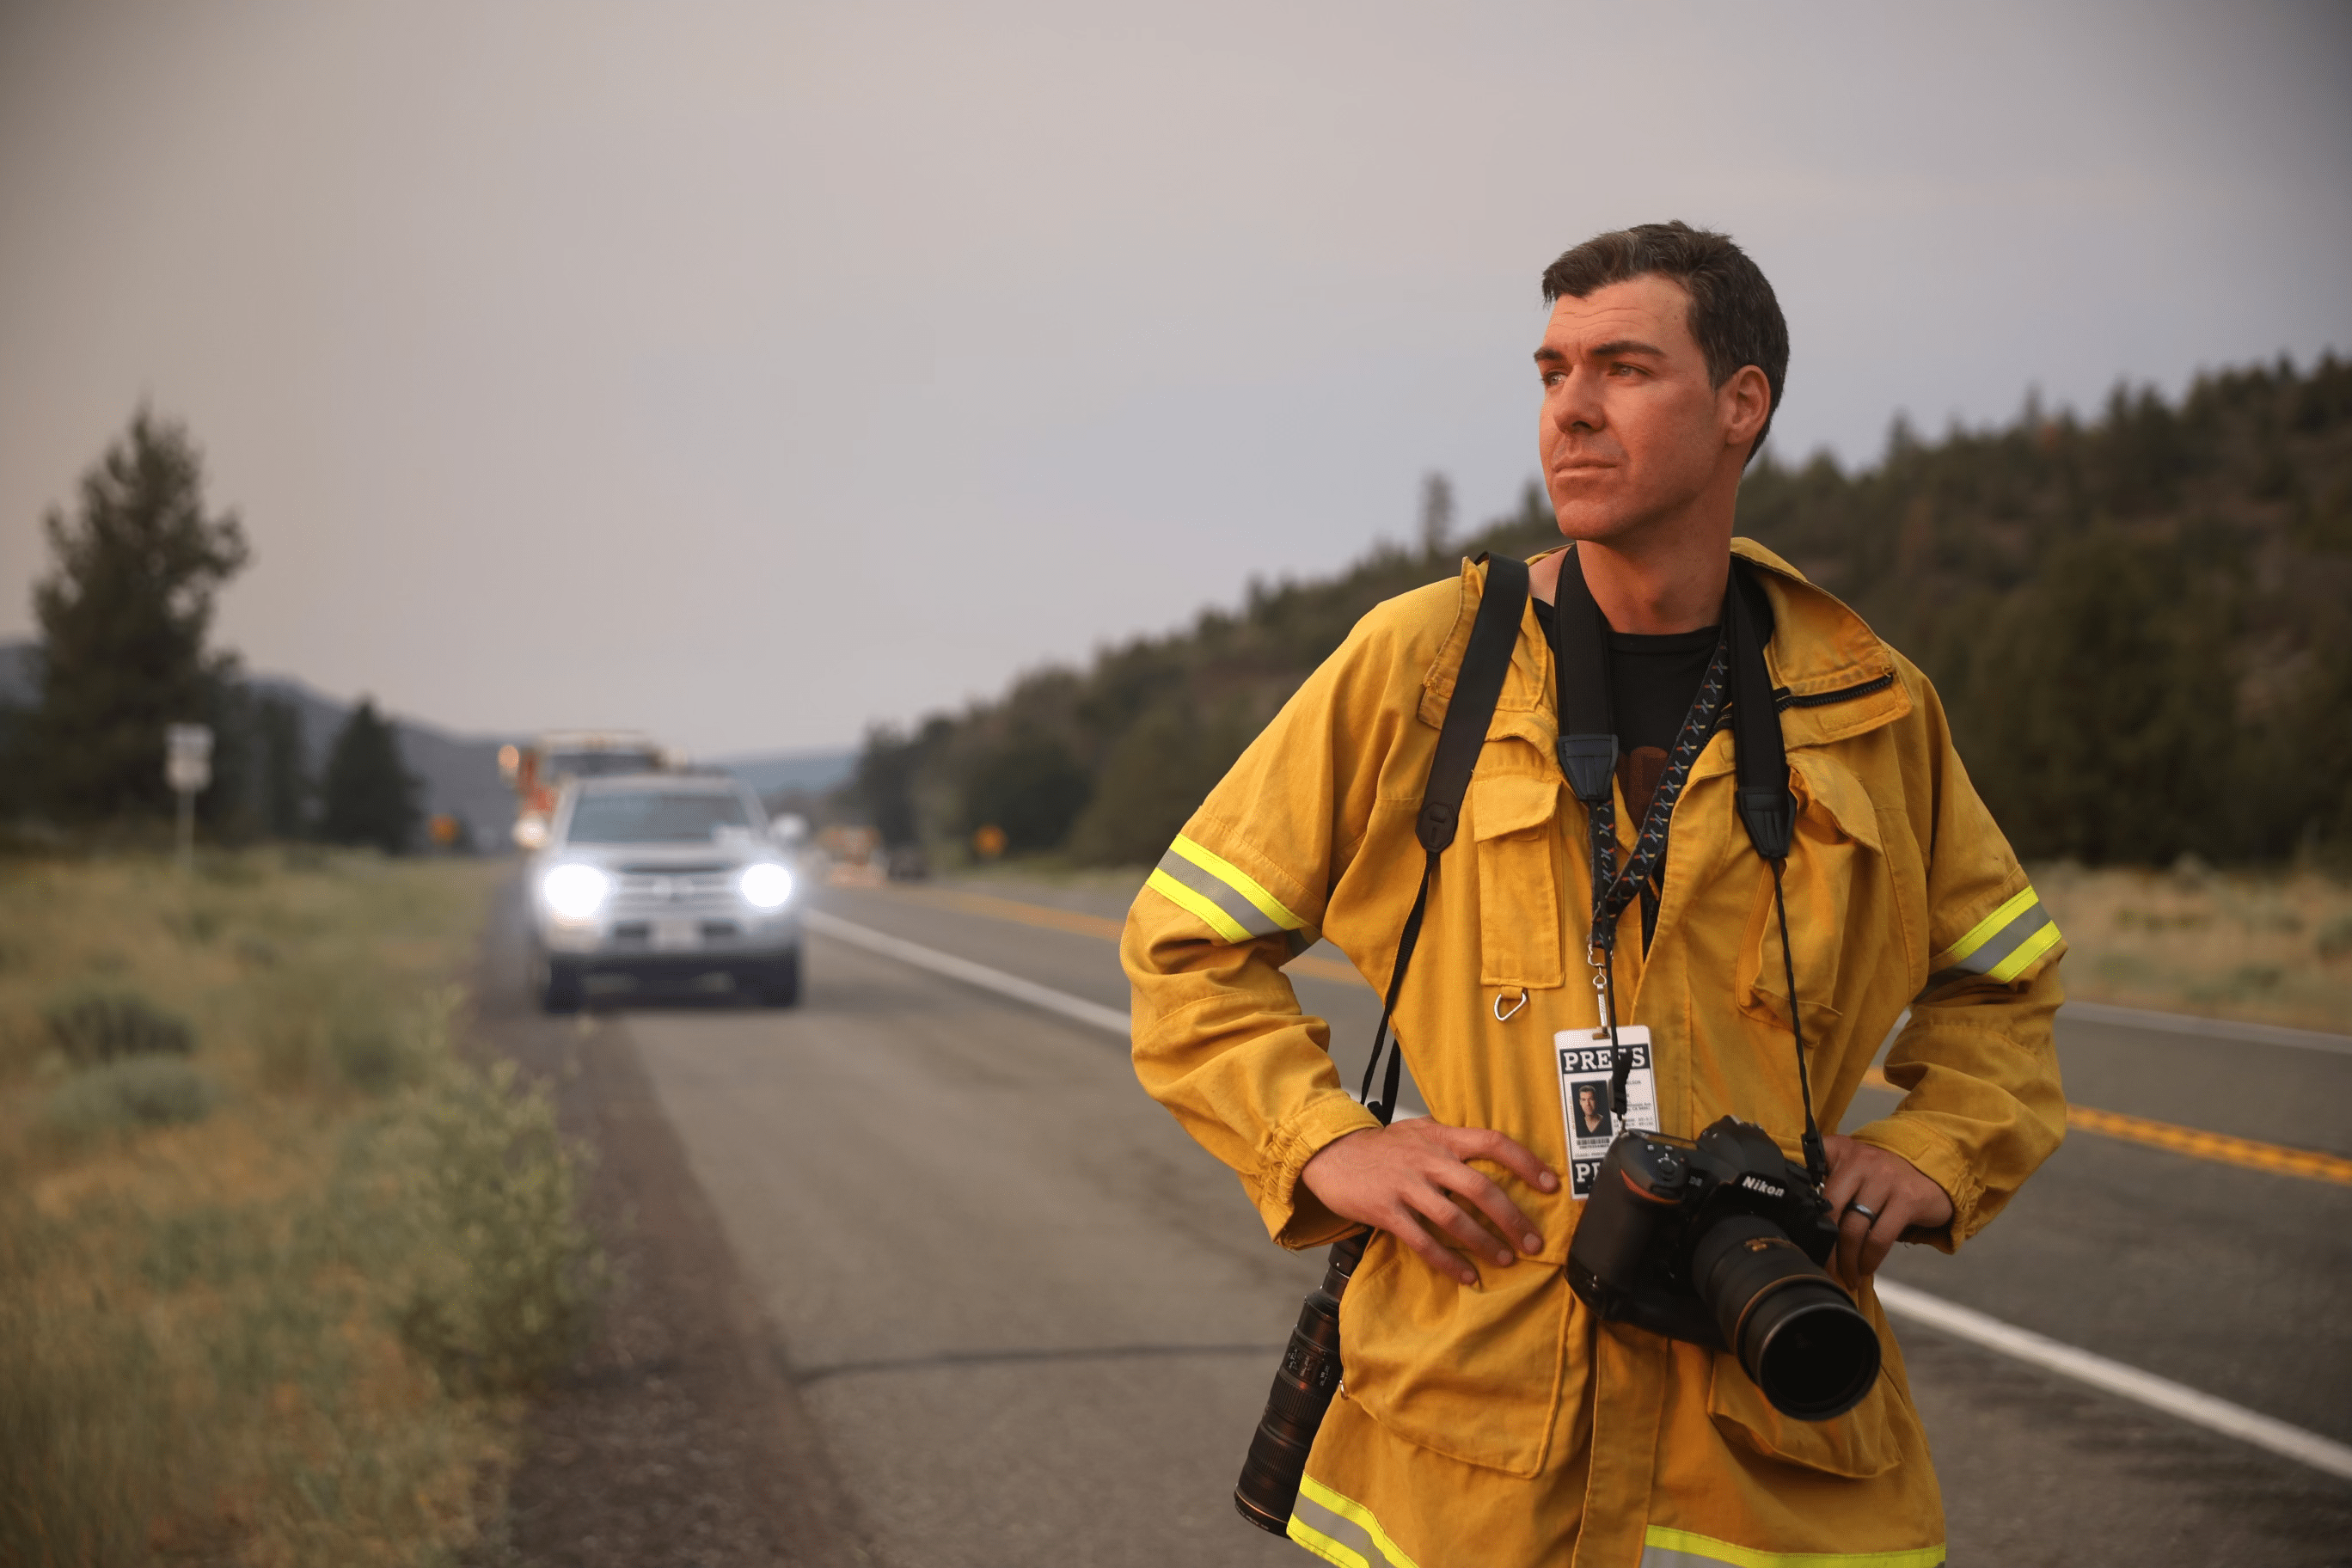 O fotógrafo Josh Edelson observa a paisagem enquanto está na estrada com uma câmera e um crachá de imprensa em volta do pescoço.